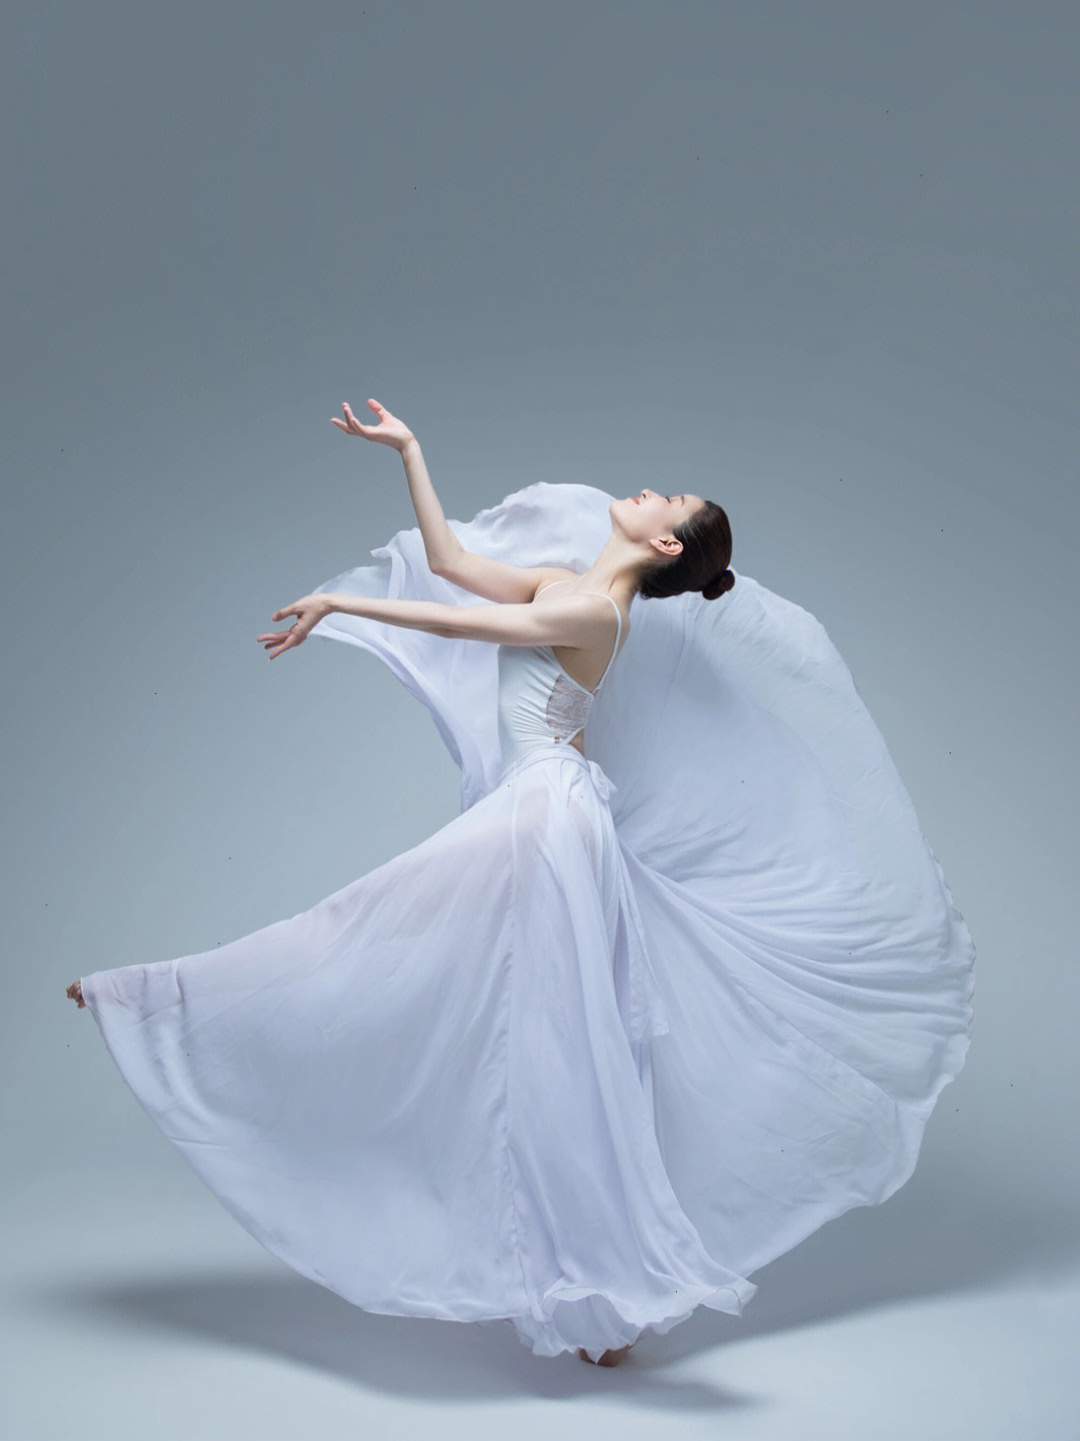 白纱裙舞蹈作品图片